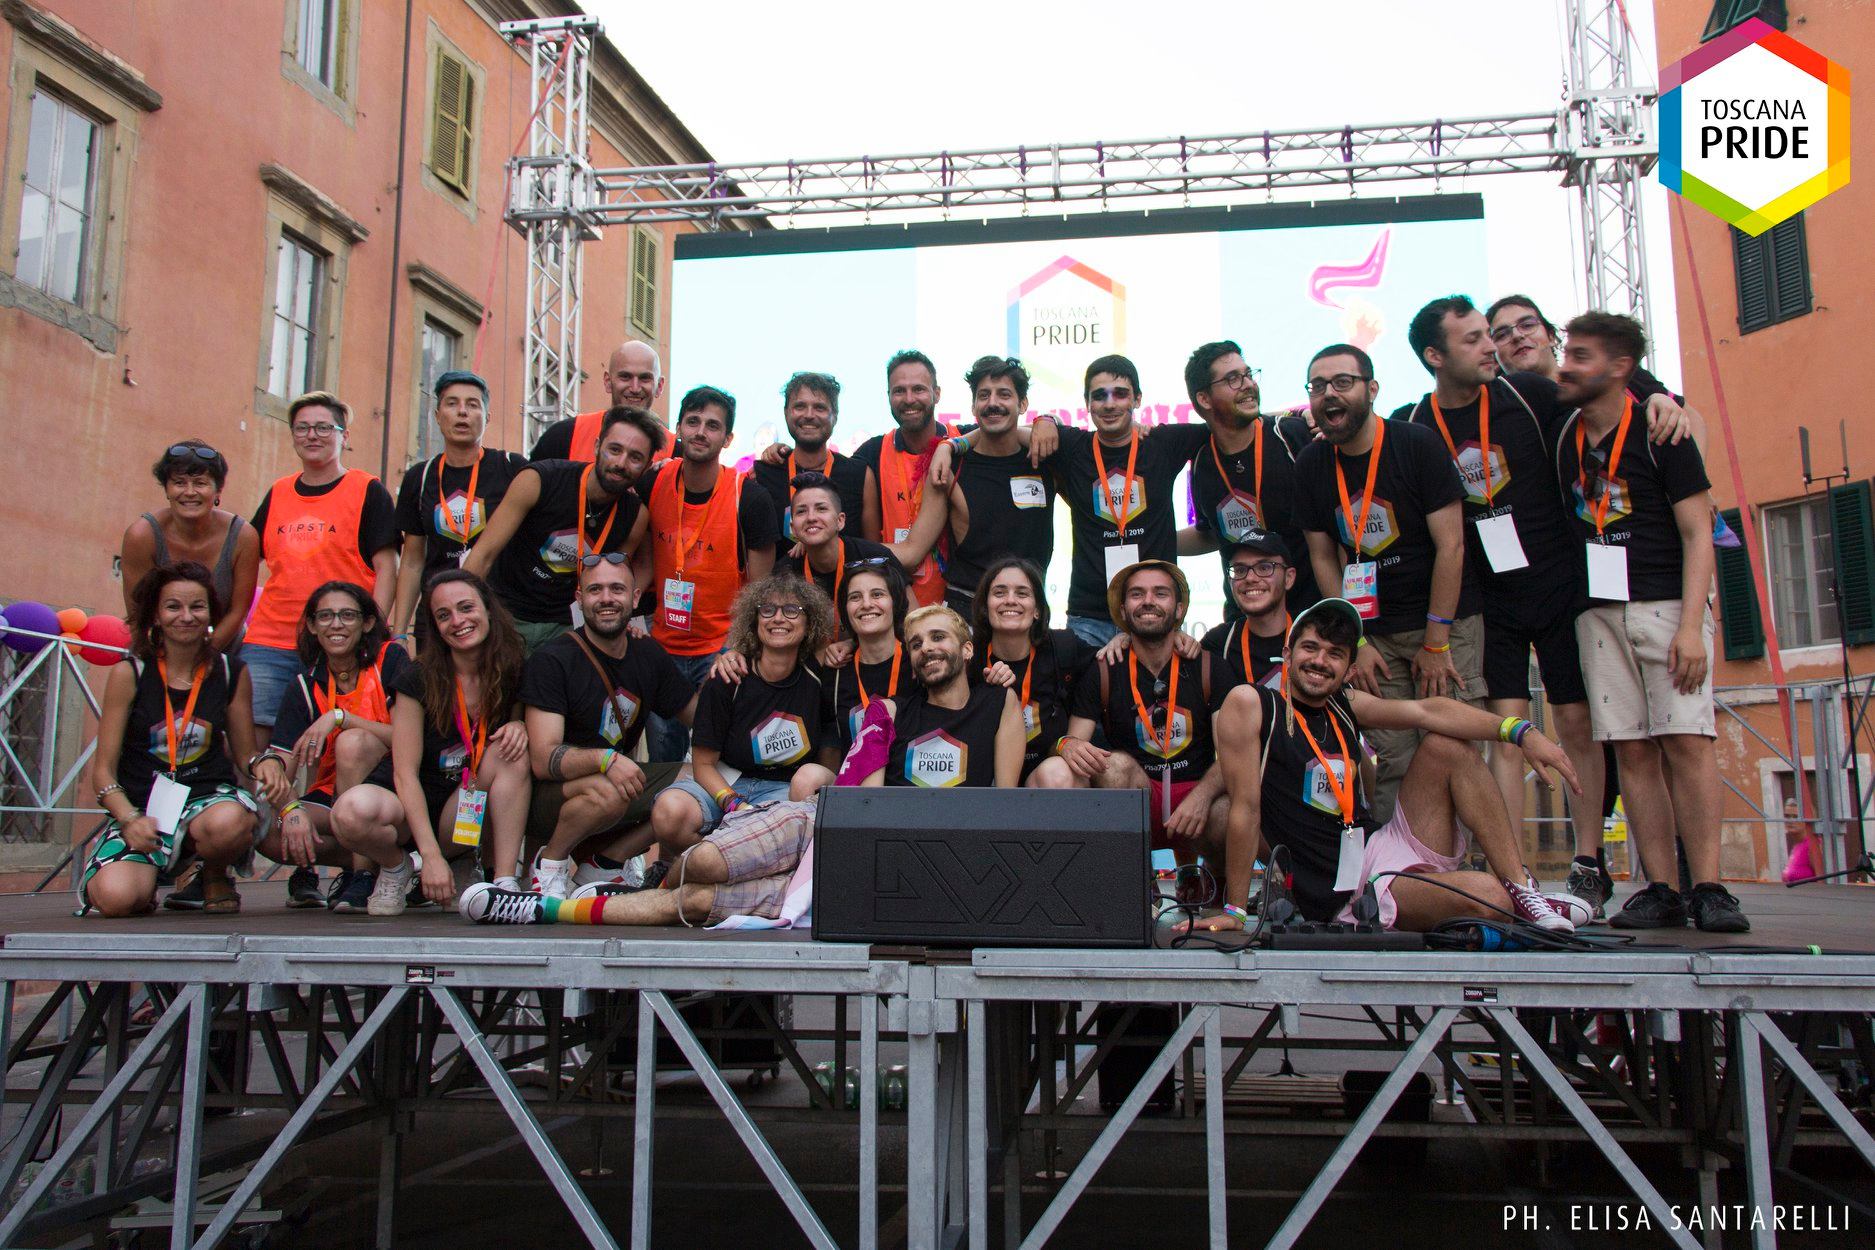 Toscana Pride: in 6 città toscane per liberare i diritti